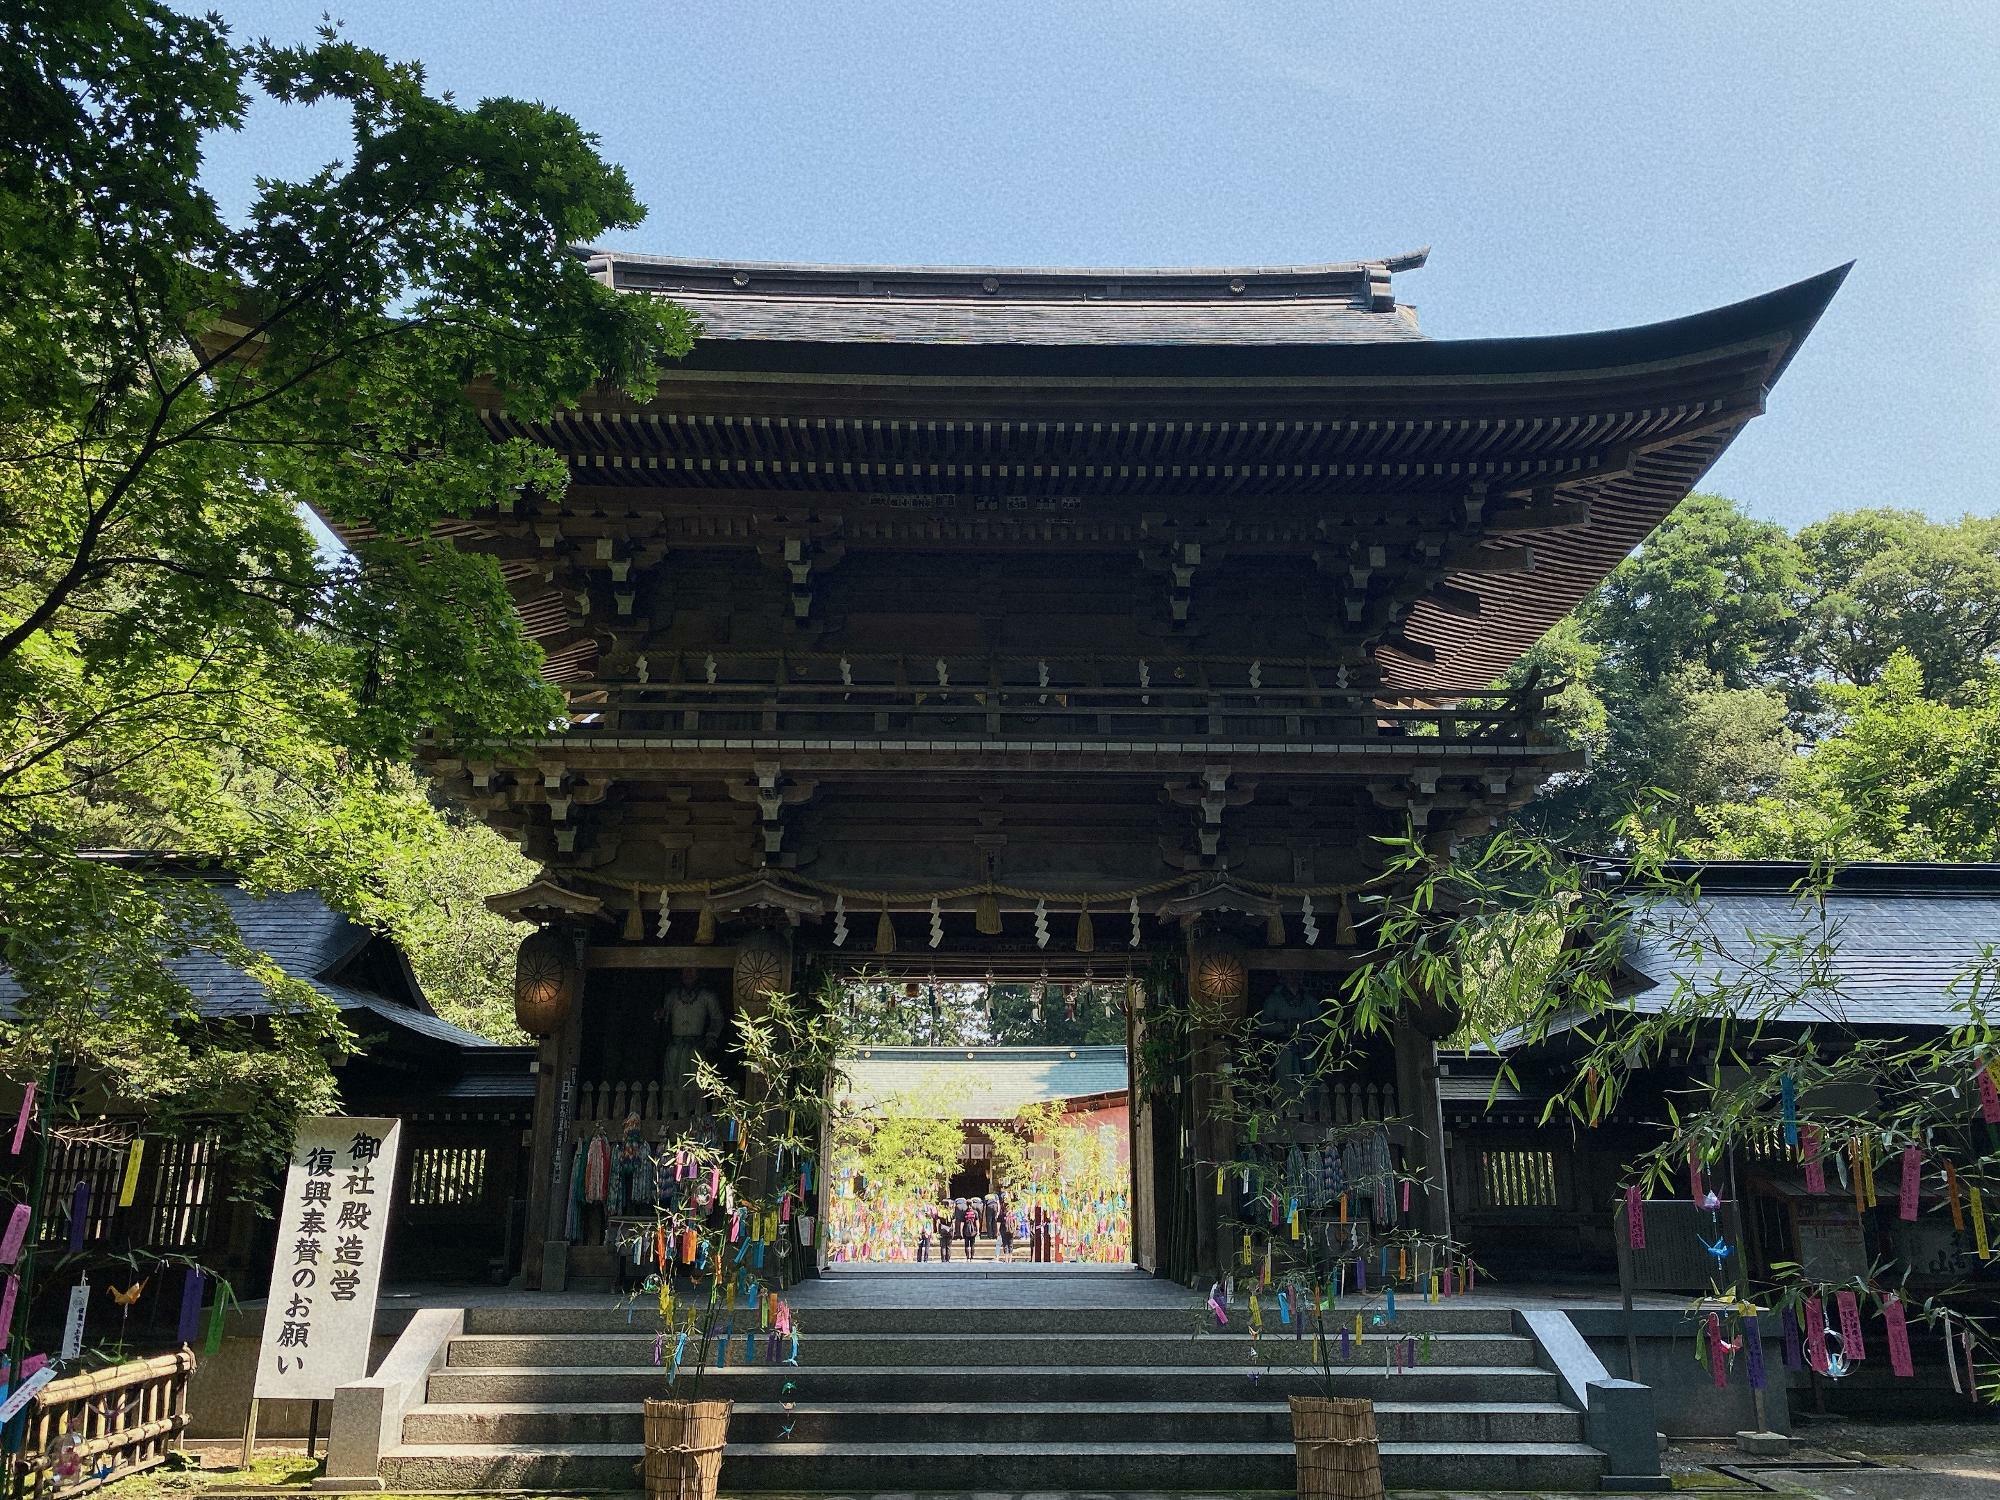 伊佐須美神社(いさすみじんじゃ) 楼門